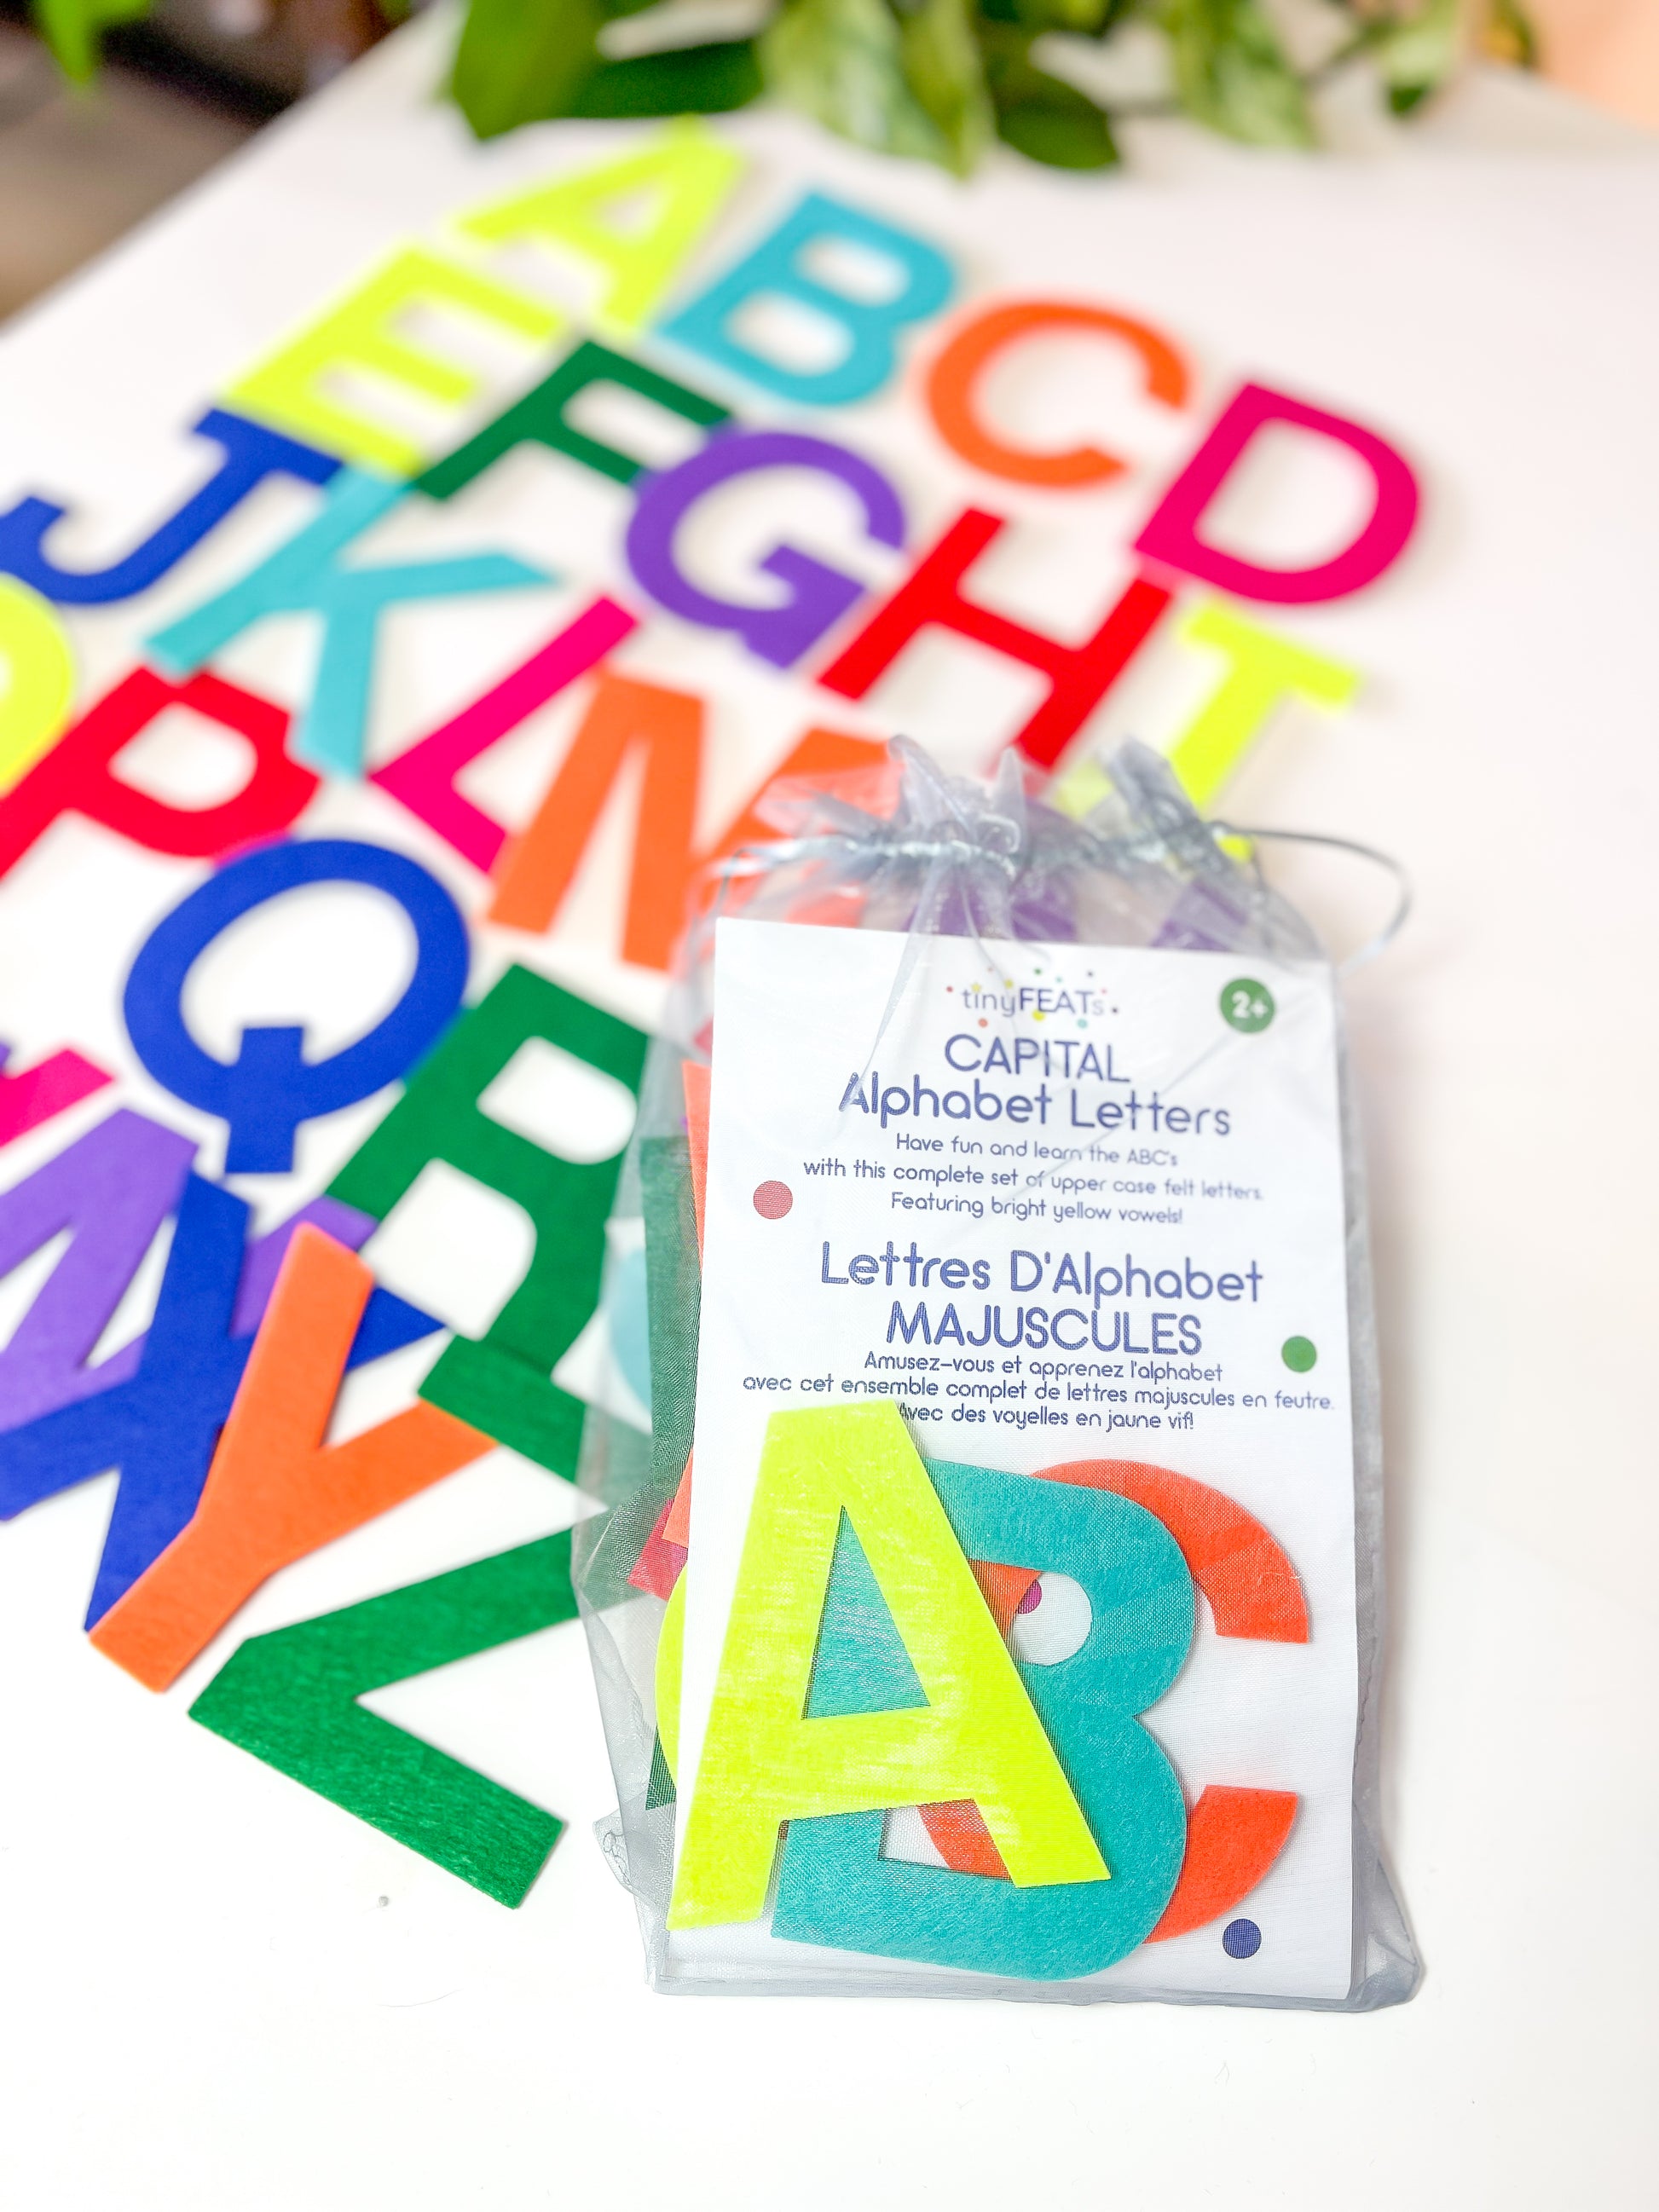 Alphabet letter sets for kids